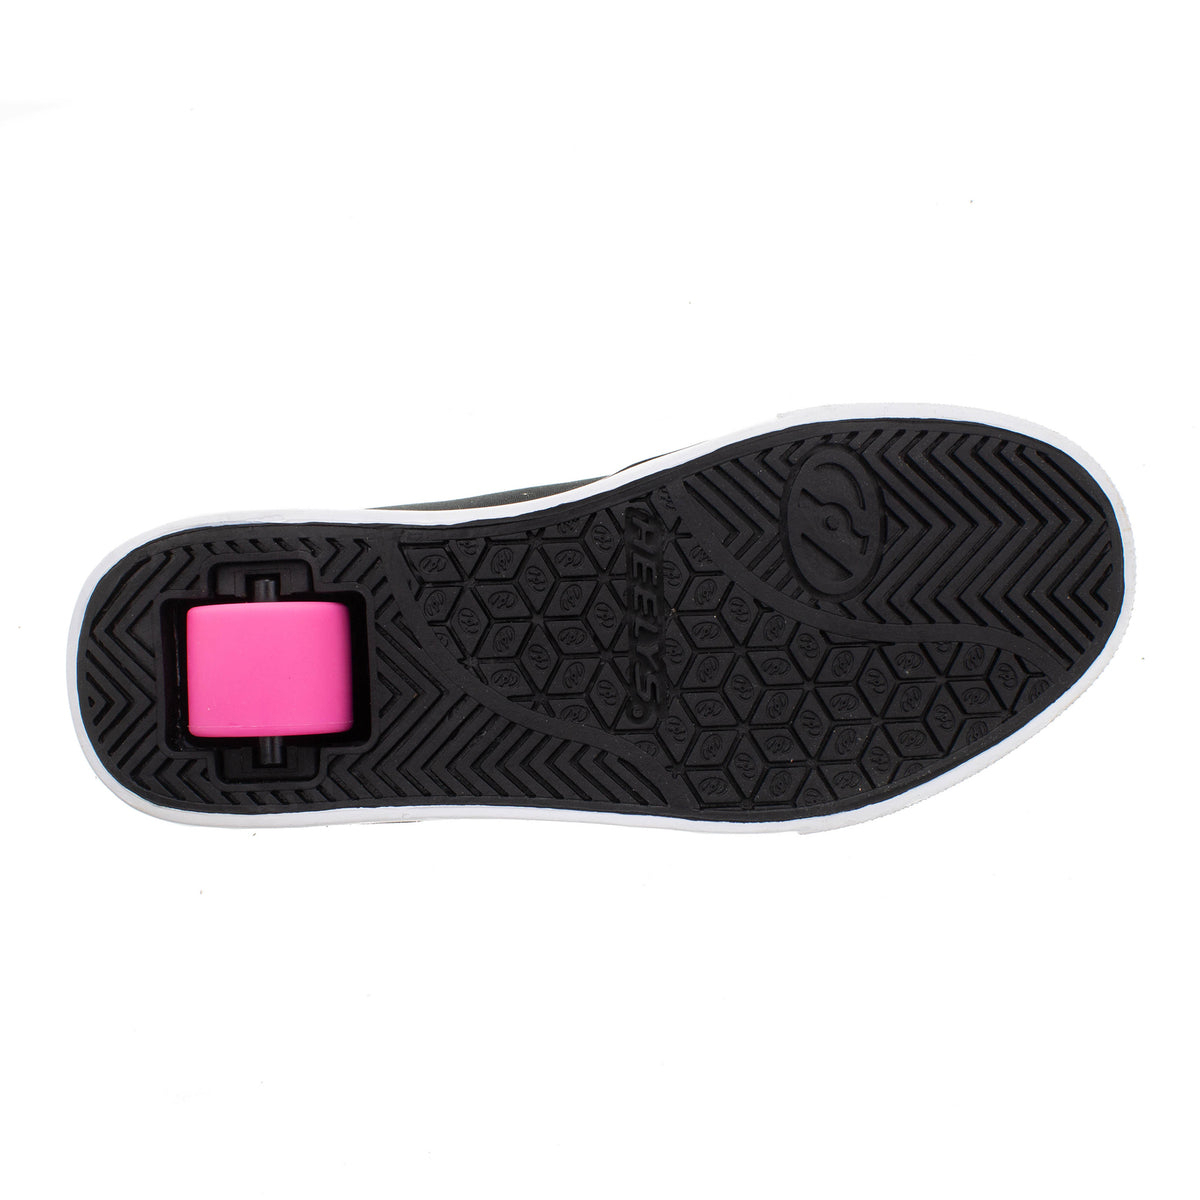 HEELYS Unisex Kids' Pro 20 Wheeled Shoe Black/White/Pink - HE100760H BLACK/WHITE/PINK - BLACK/WHITE/PINK, 7